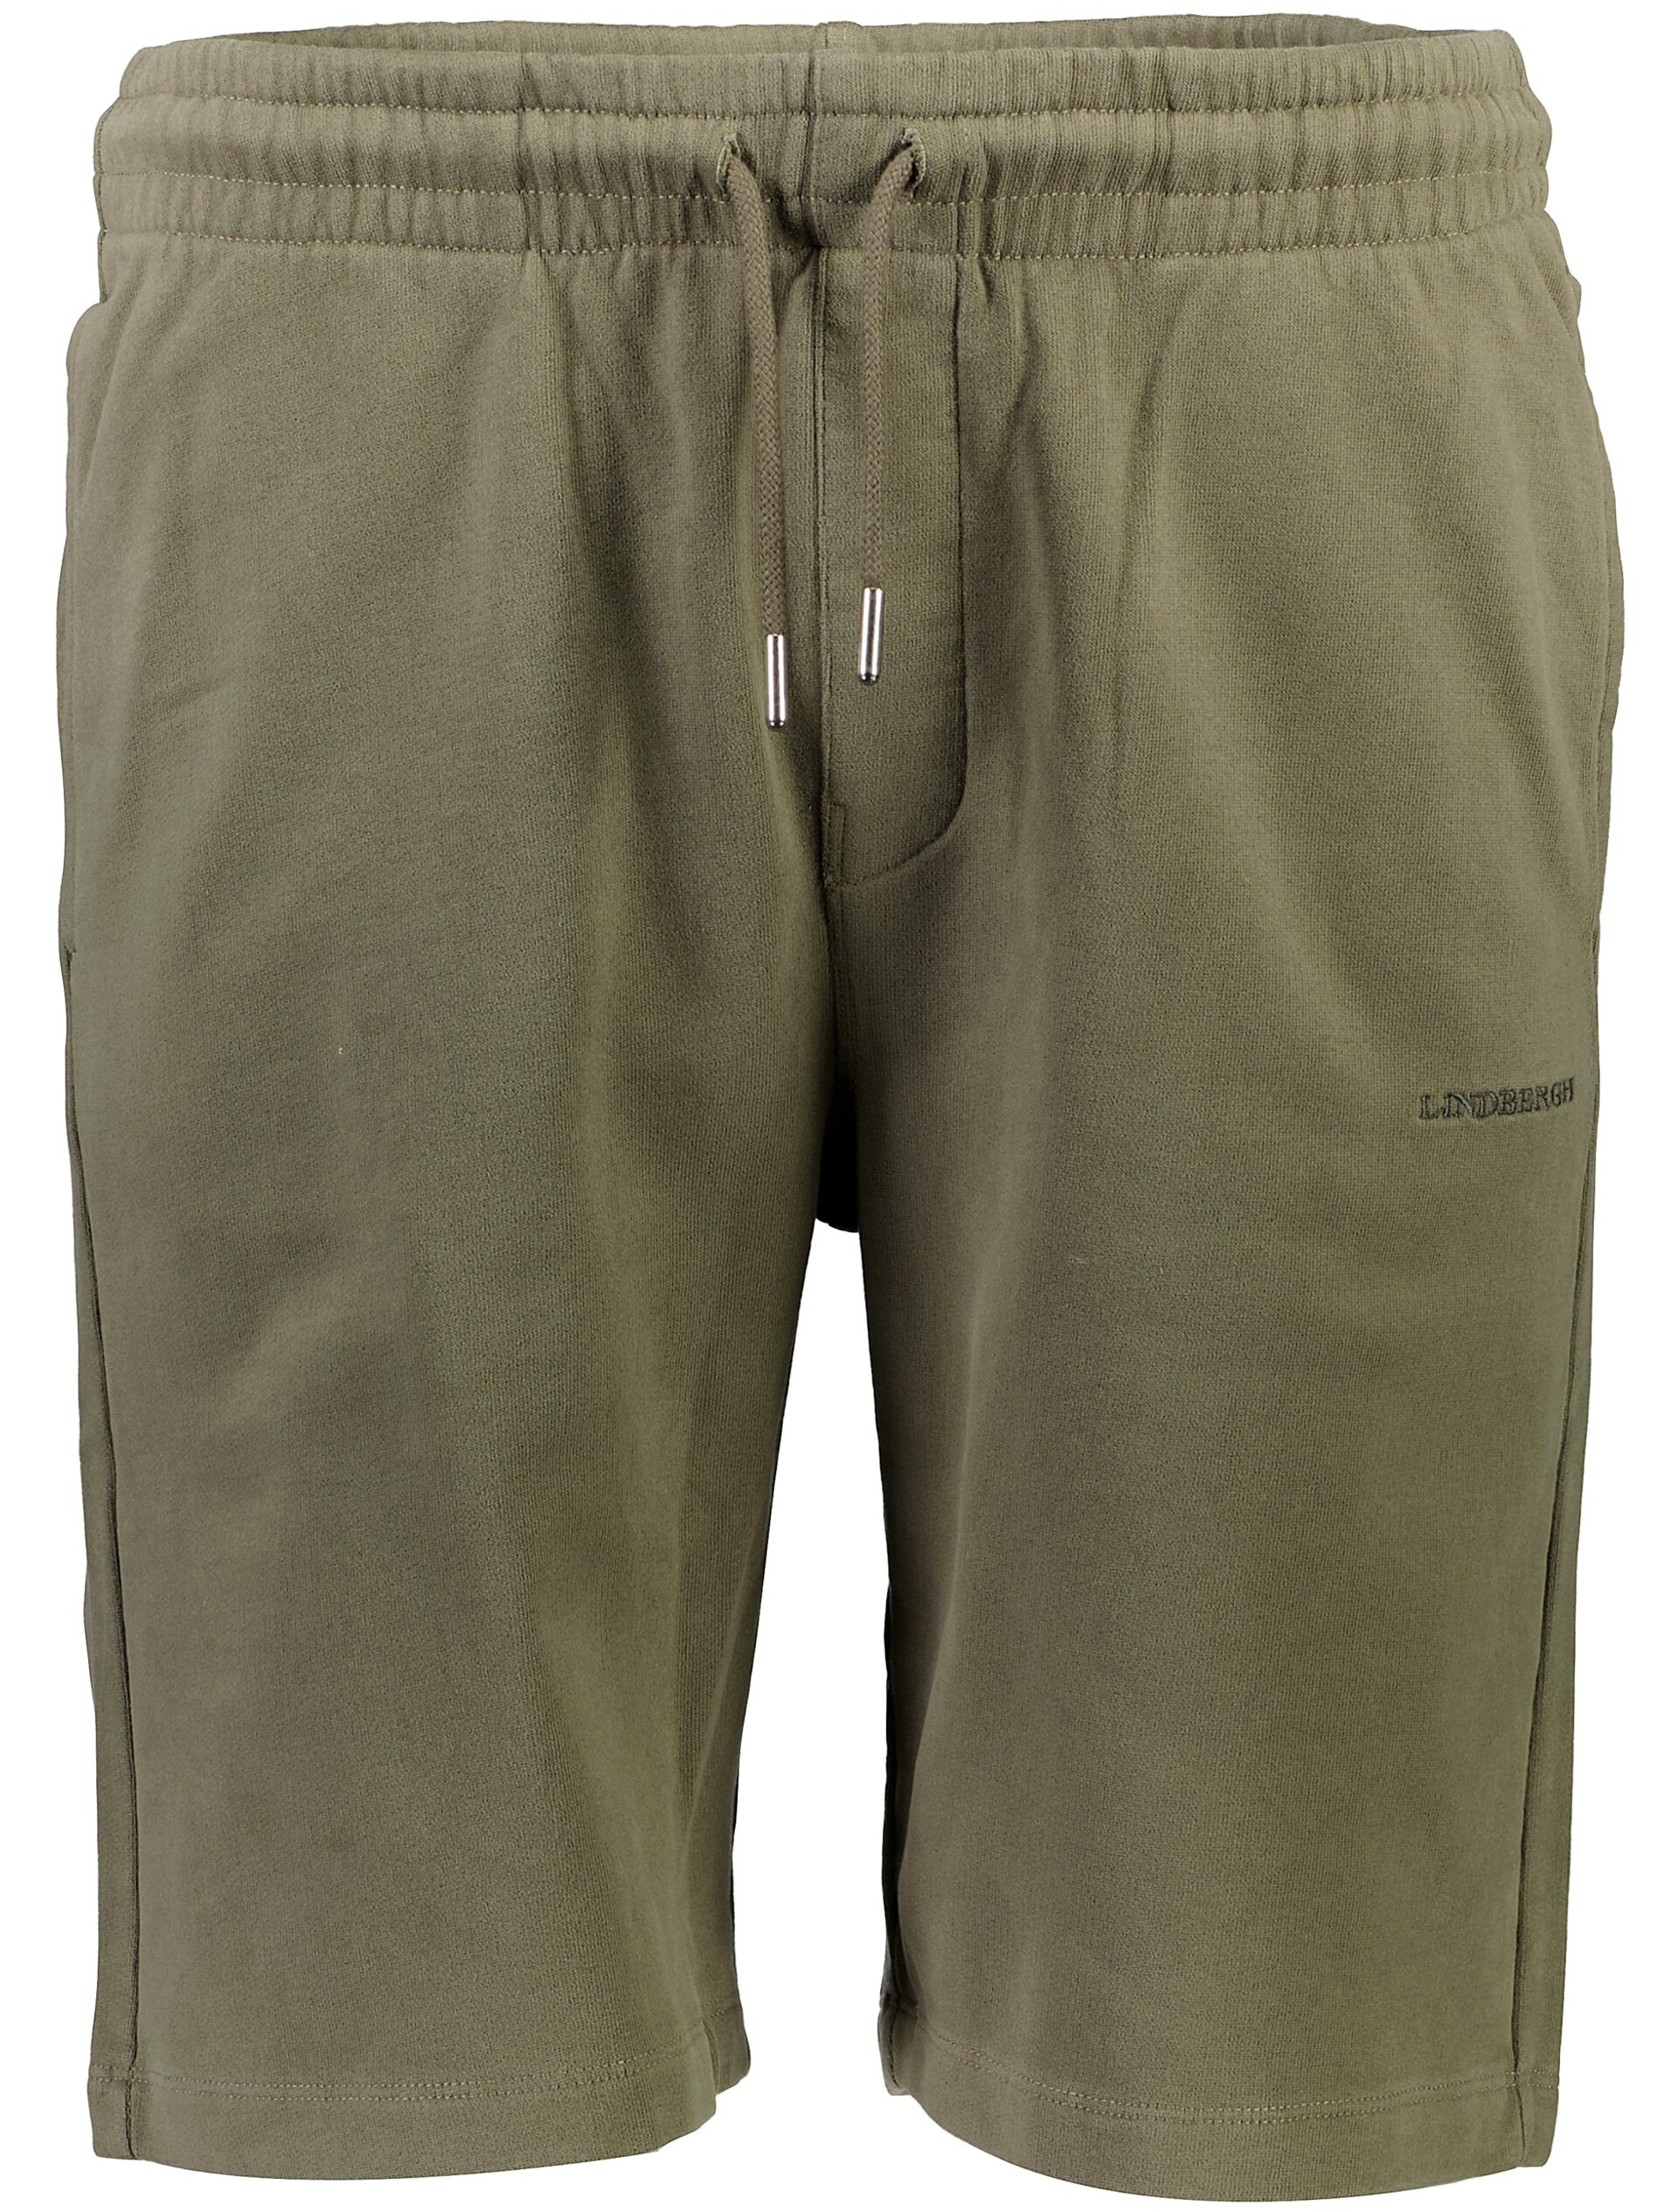 Lindbergh Casual shorts grøn / lt dusty army